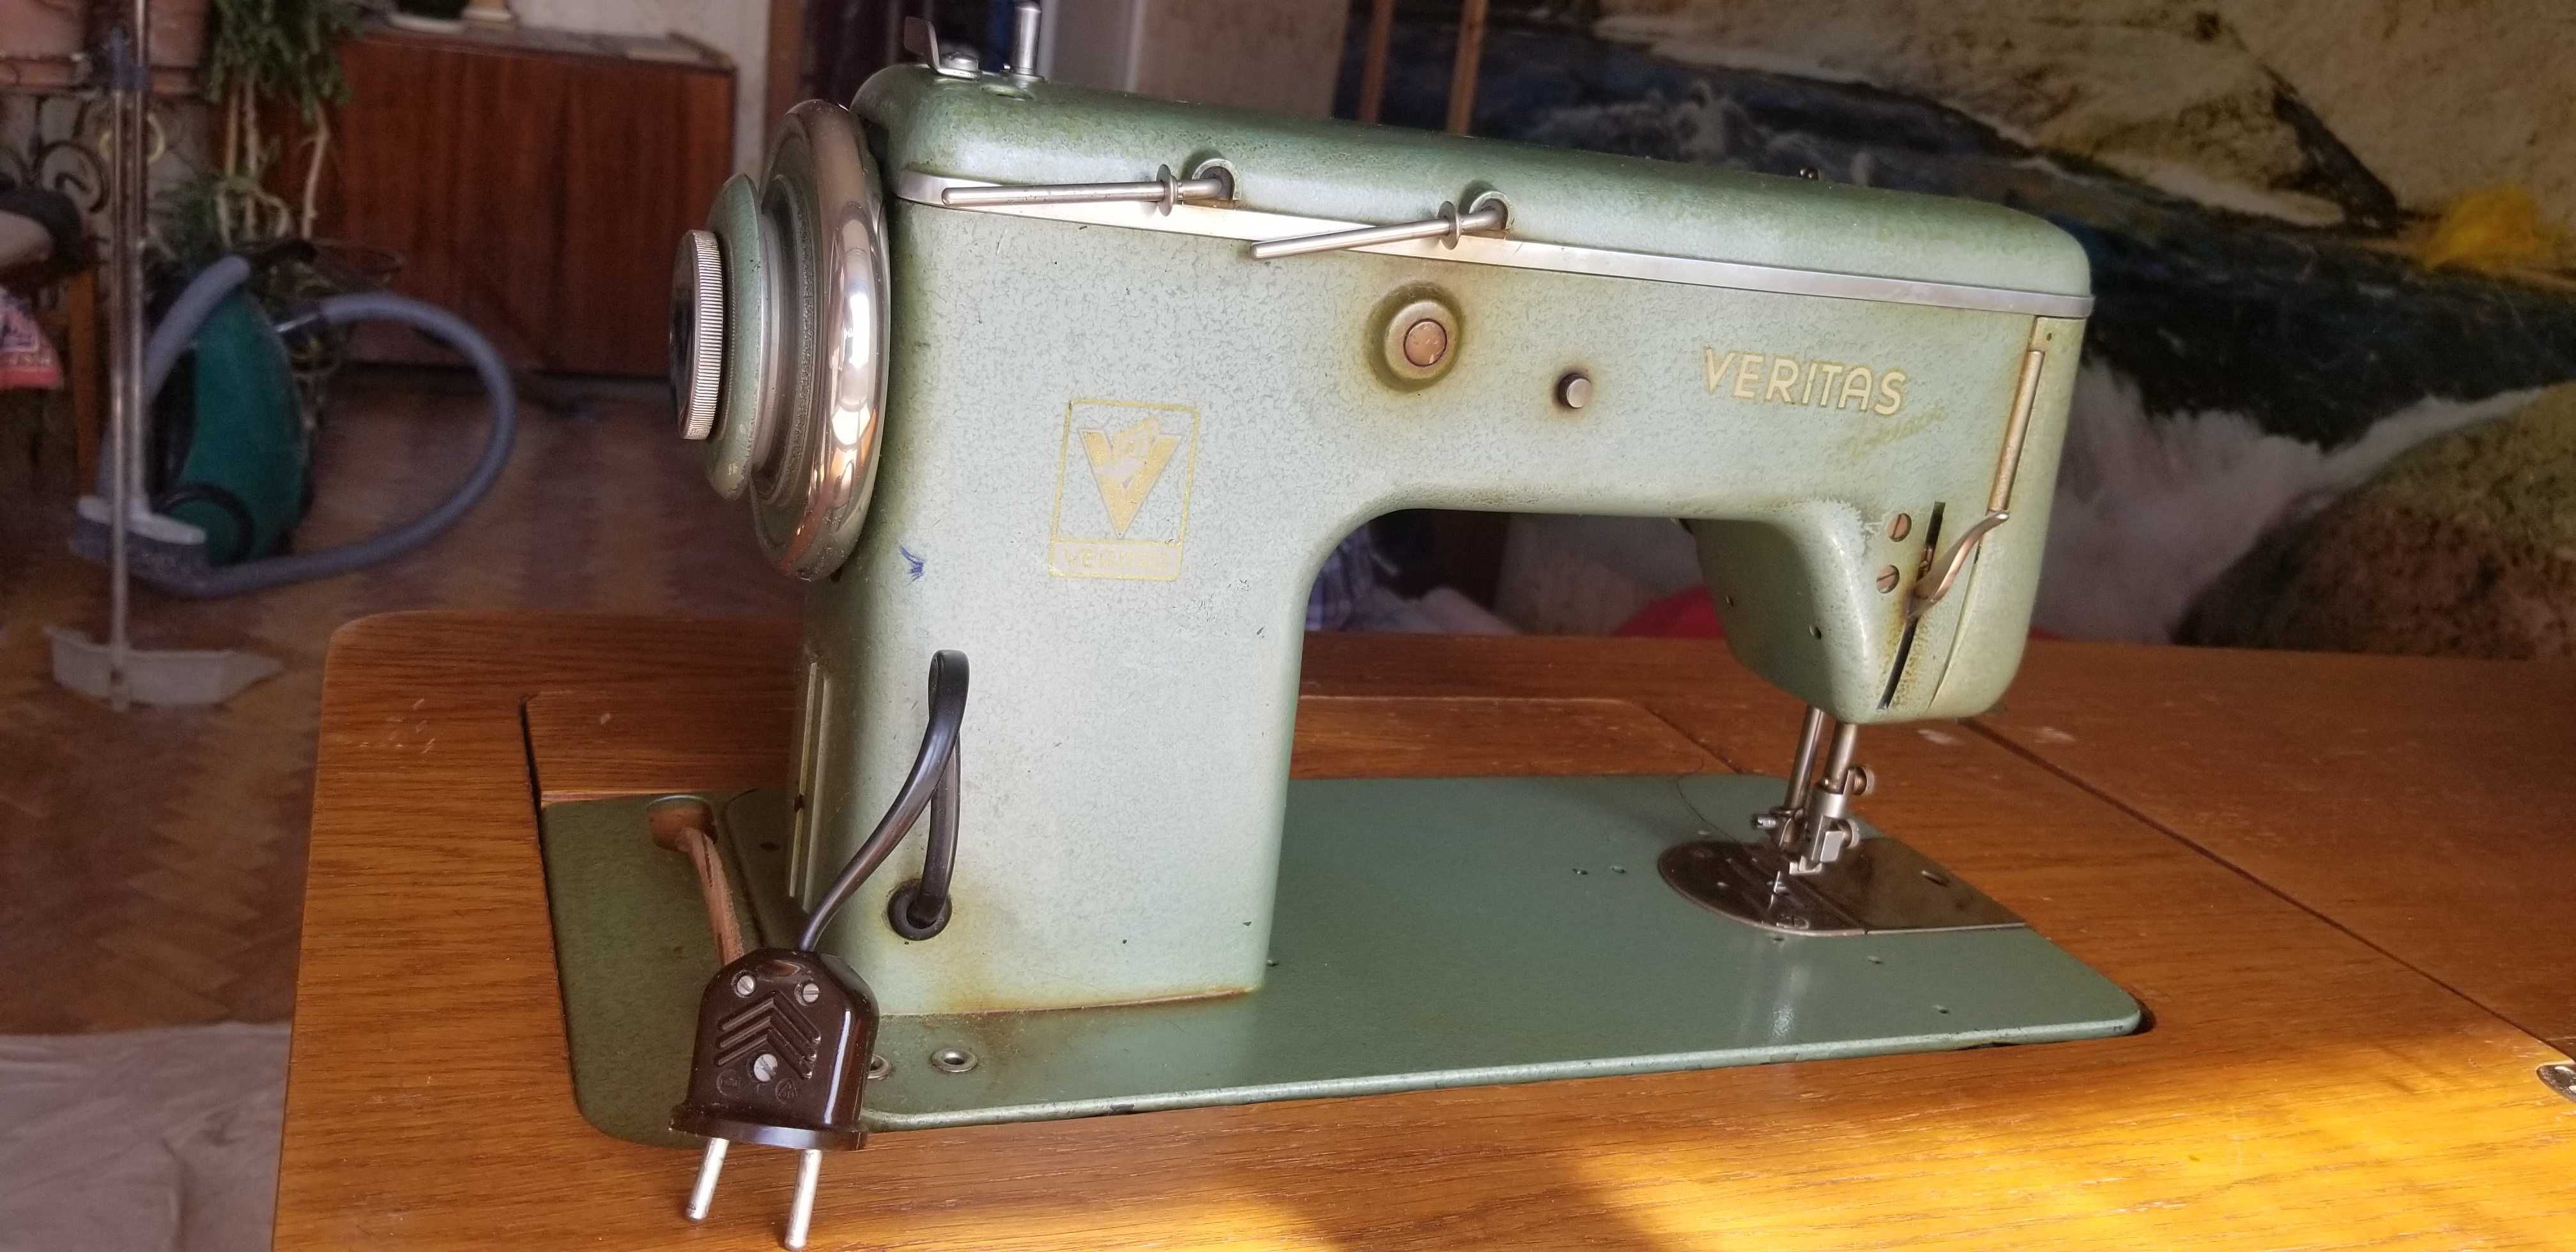 Німецька швейна машинка Veritas з тумбою